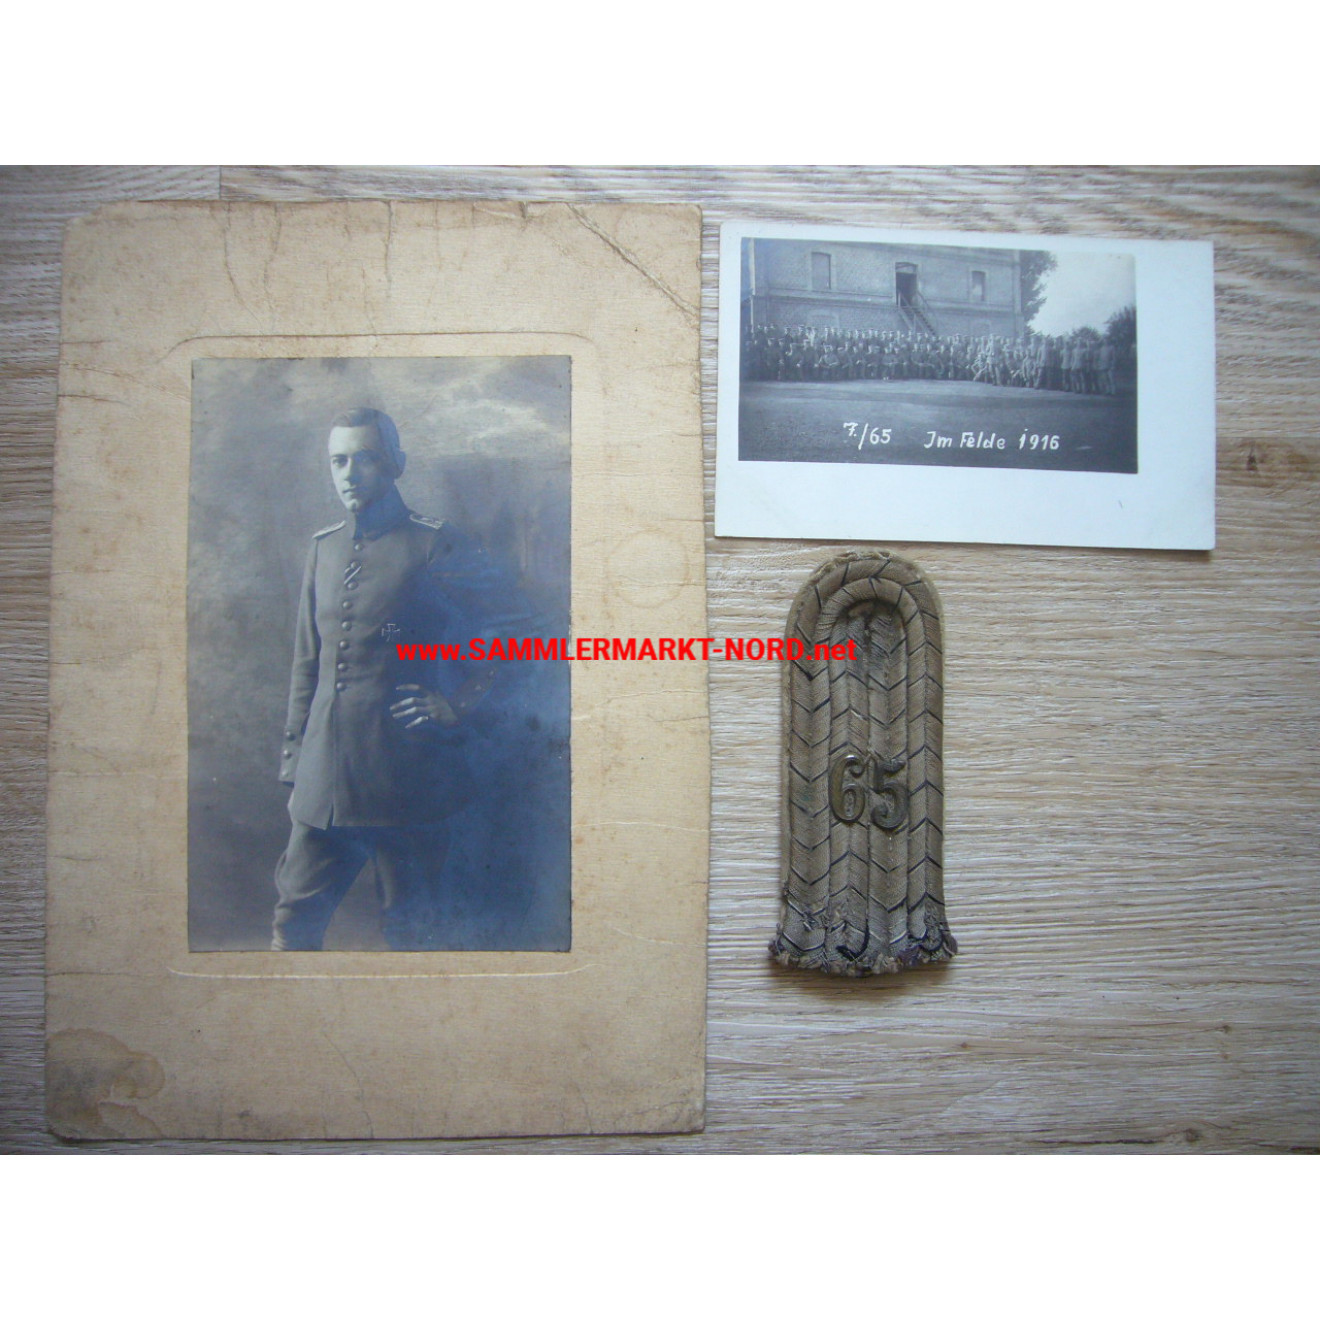 185. Infanterie Division - Infanterie Regiment 65 - Schulterklappe & Fotos